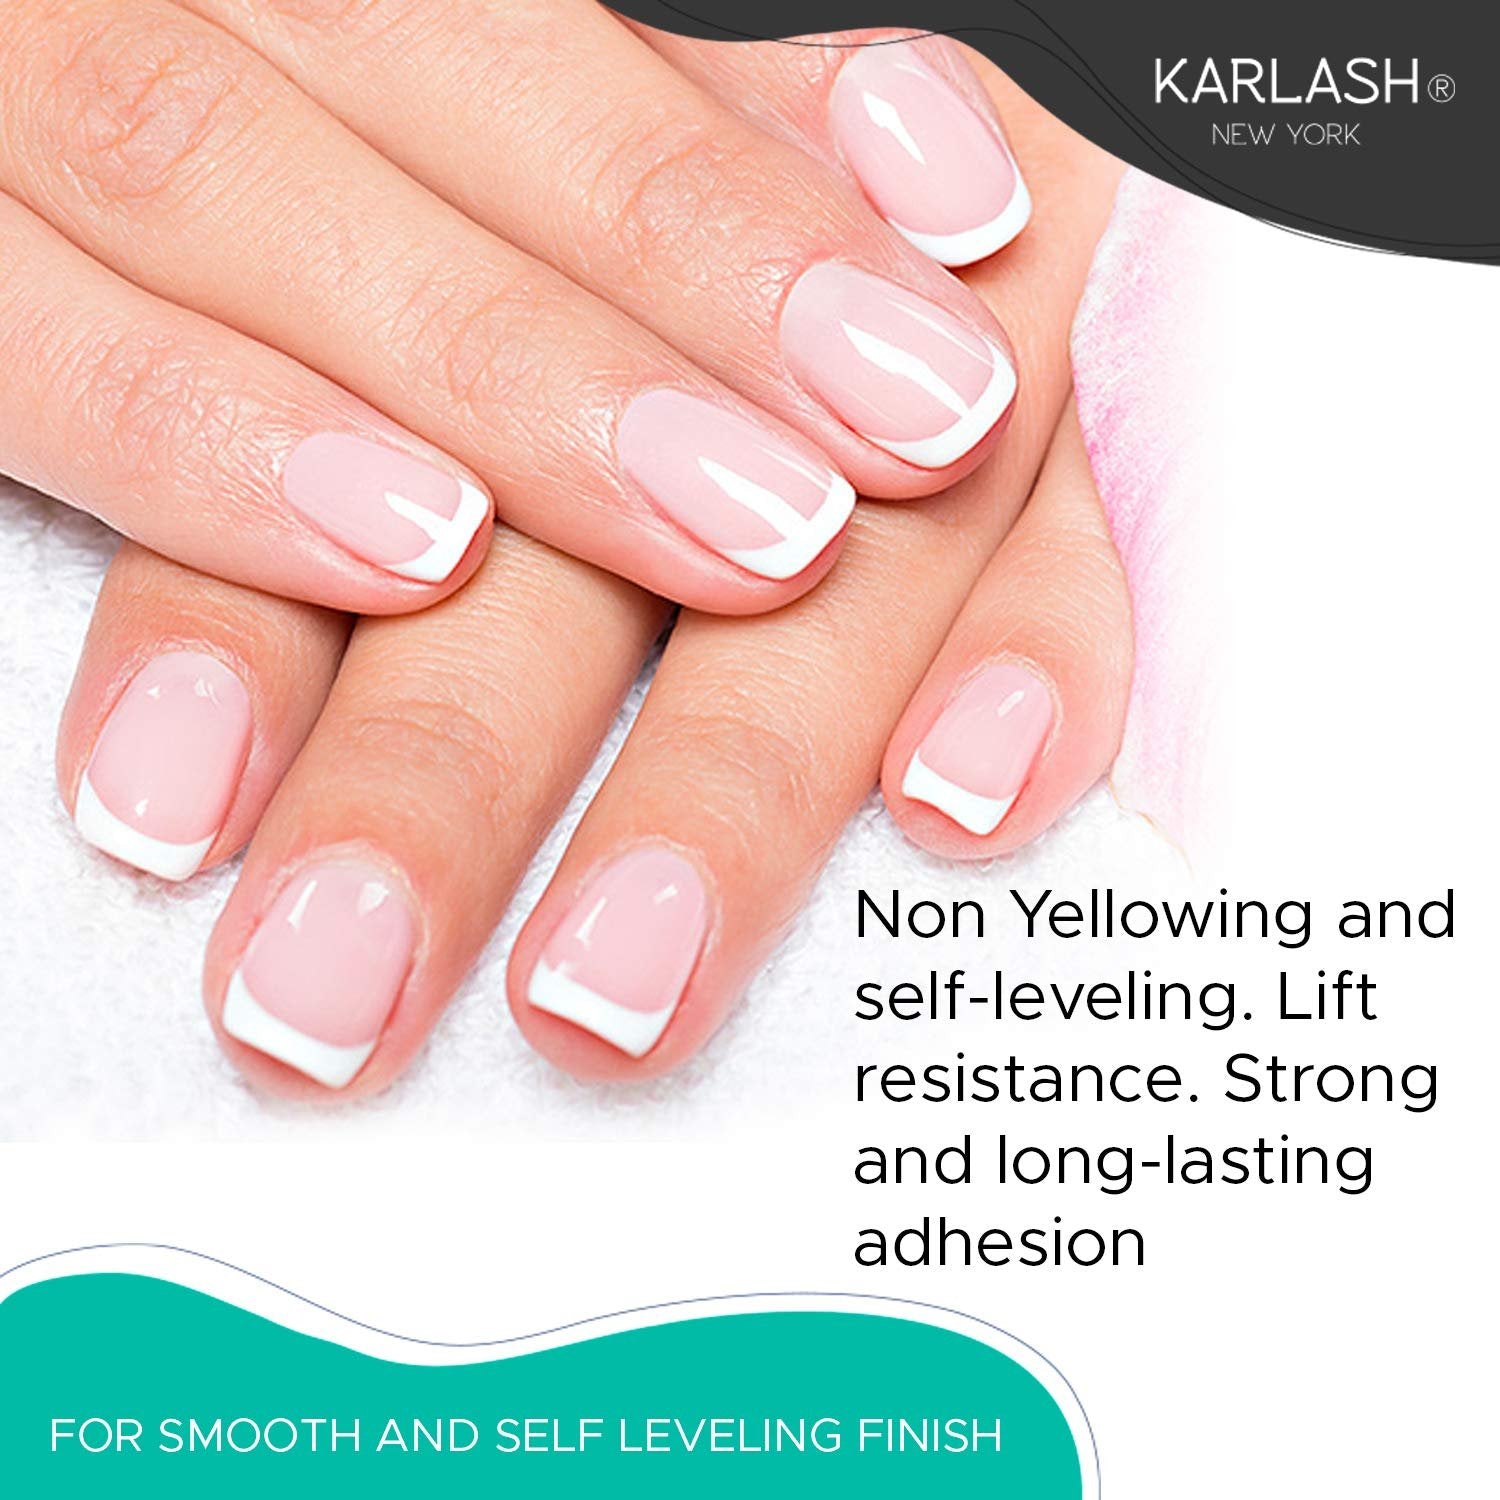 Karlash Professional Acrylic Powder Crystal Pink 4 oz